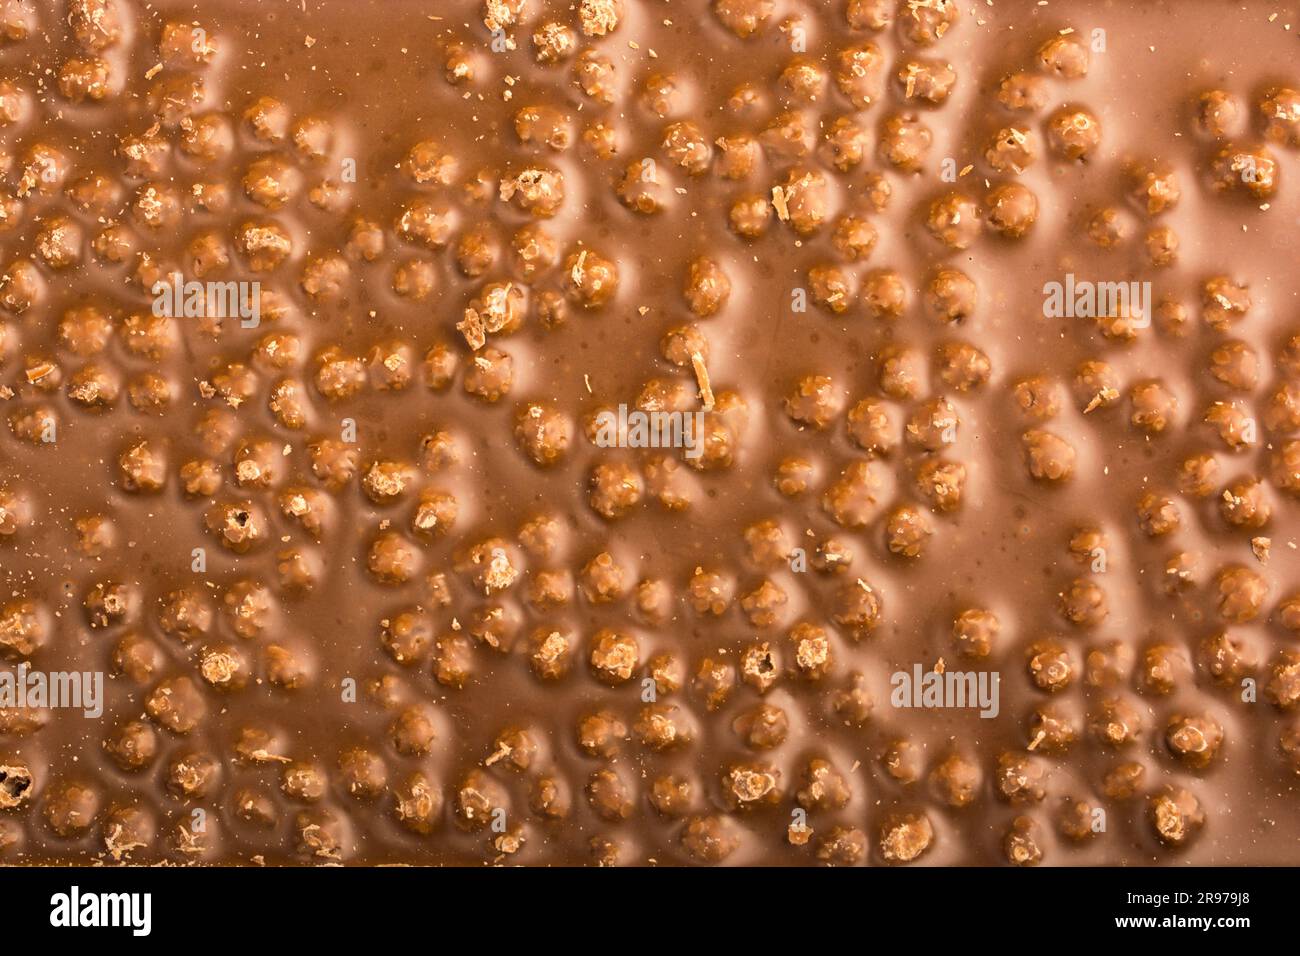 sfondo di cioccolato con nocciole per l'intera immagine Foto Stock